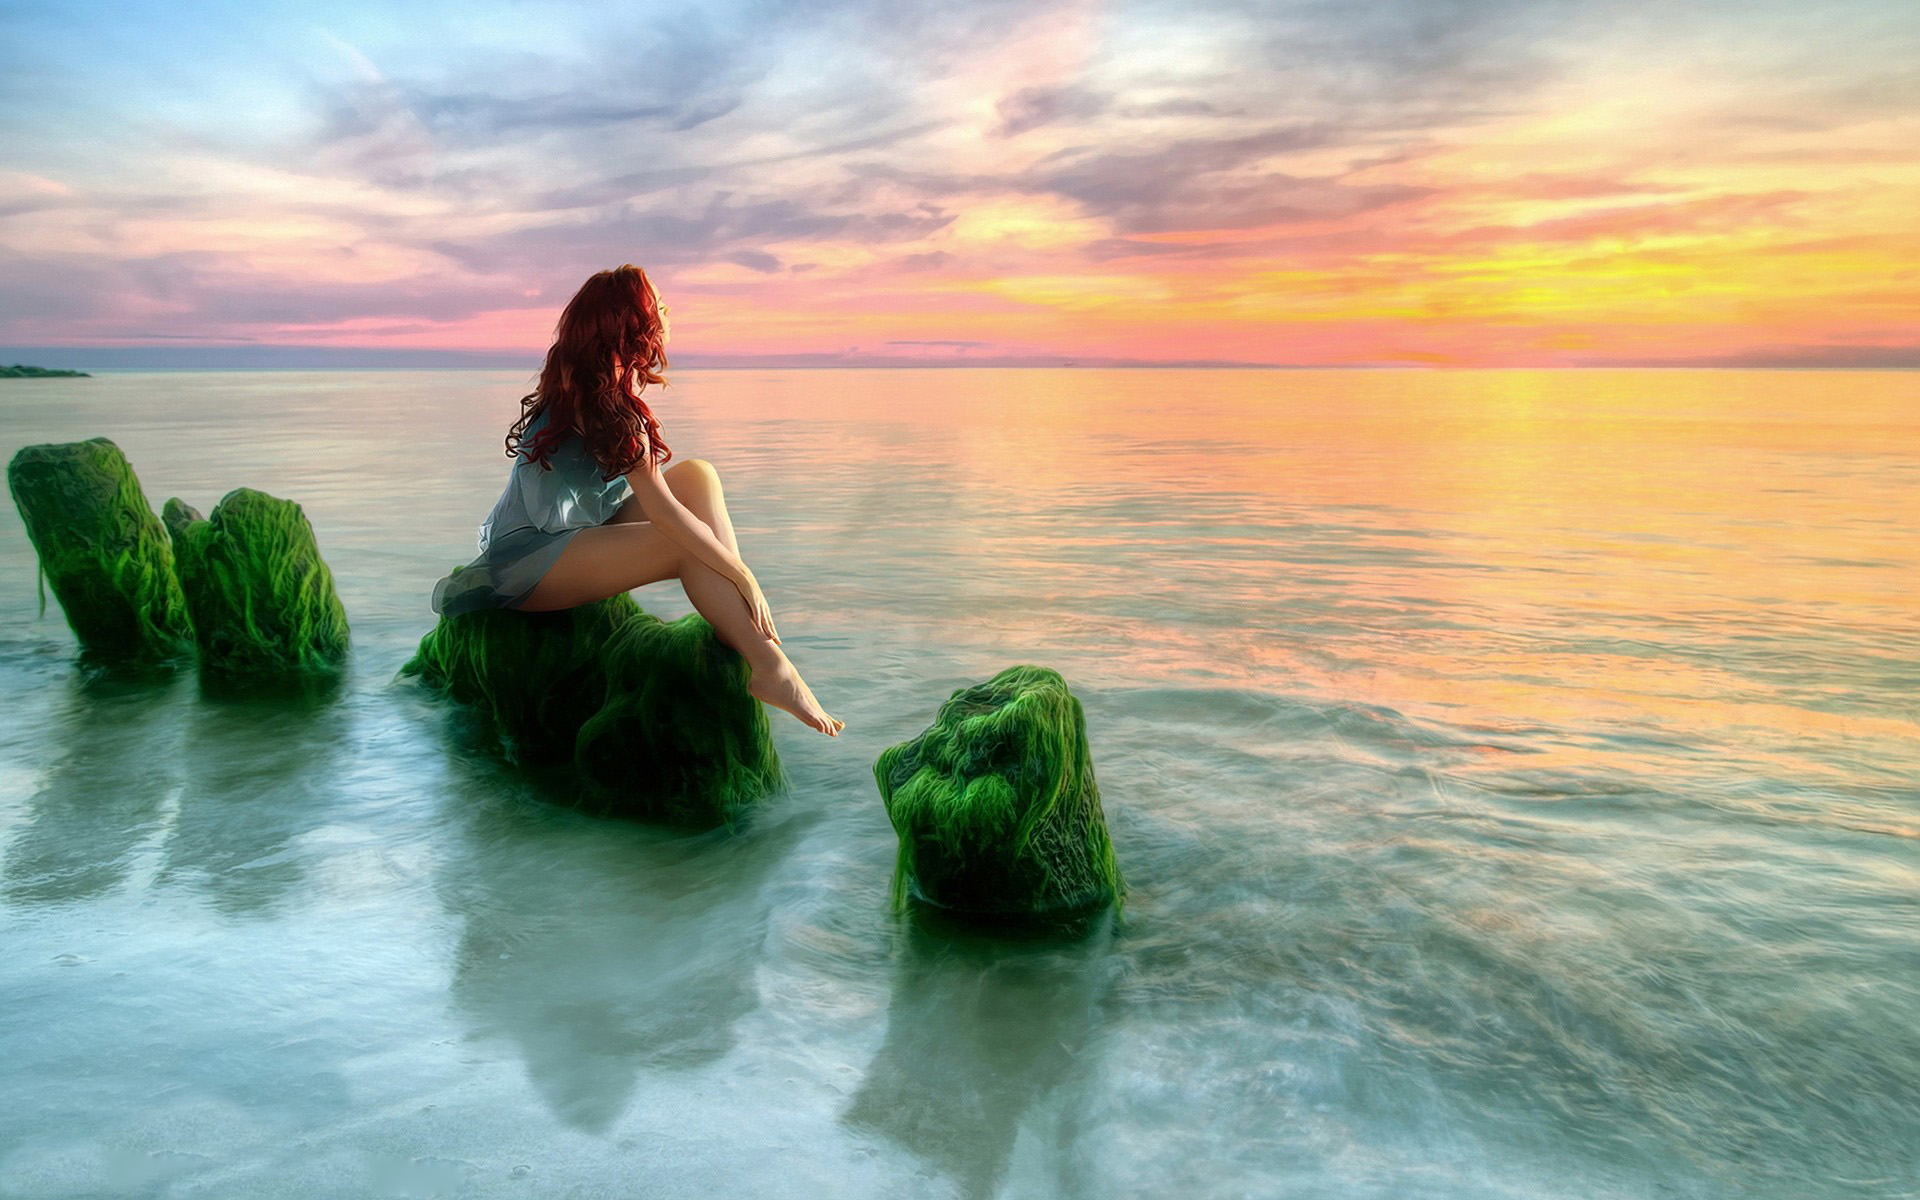 Girl Sitting on Moss-Covered Ocean Rocks